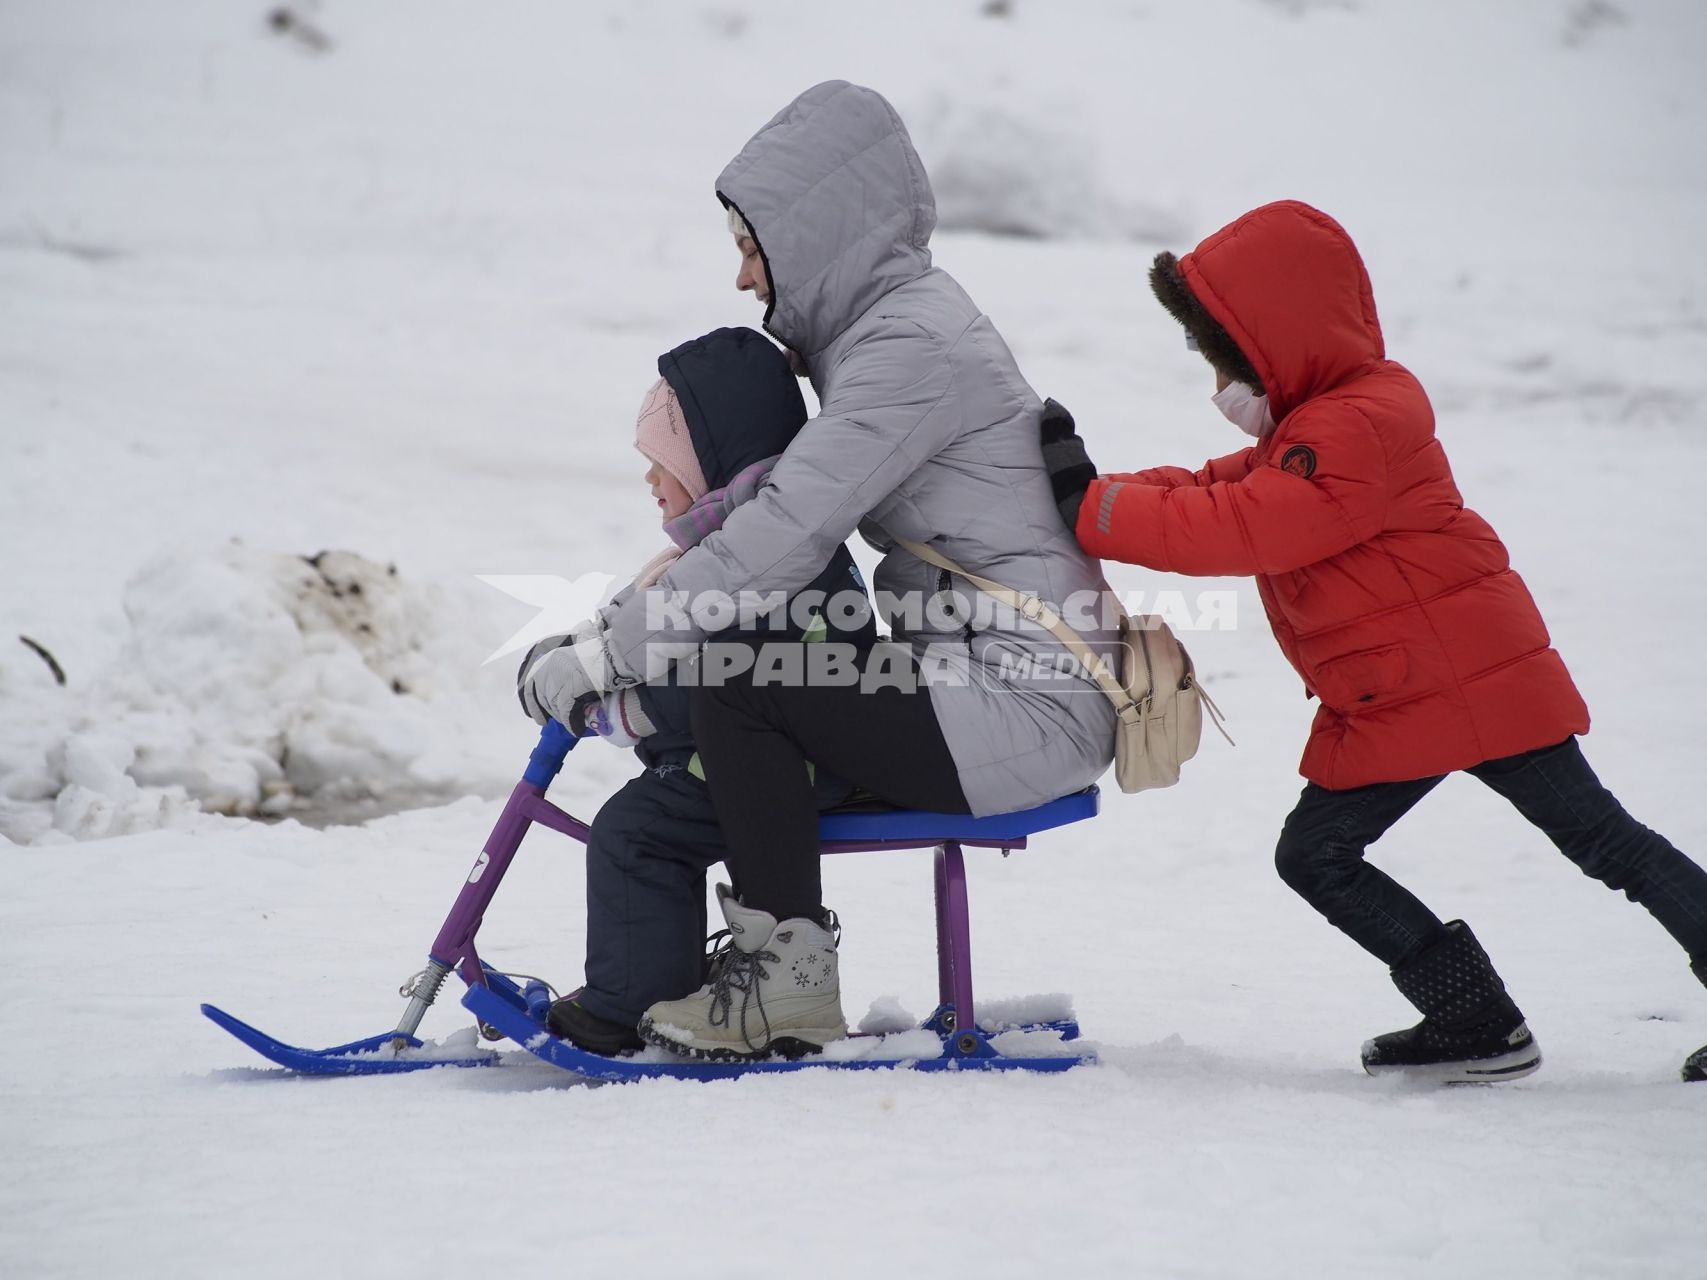 Тула. Женщина с детьми катается на снегокате.